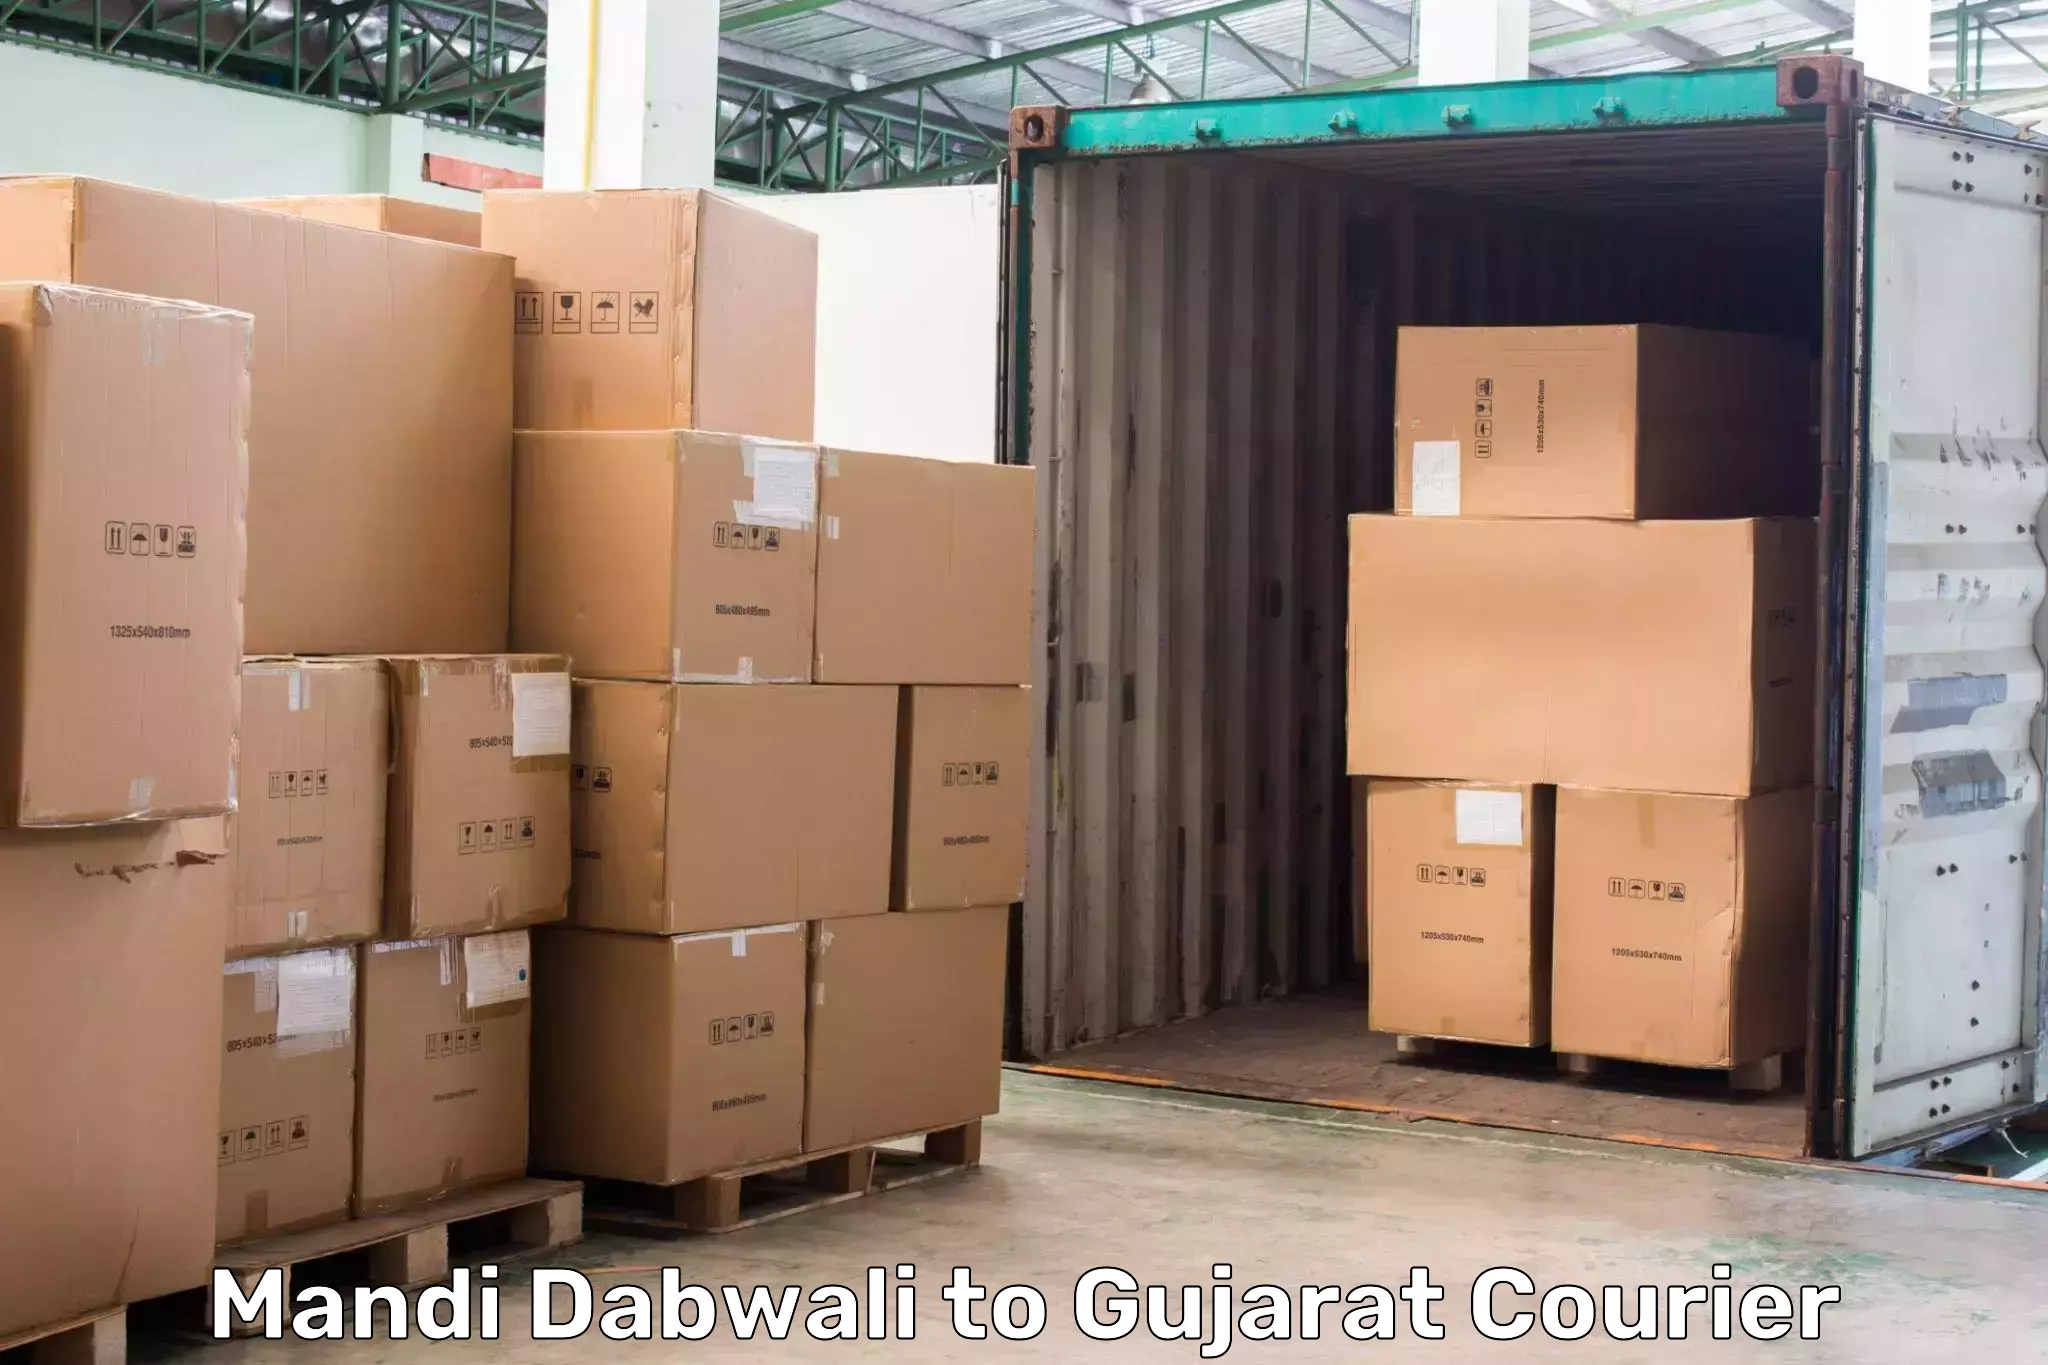 Global freight services Mandi Dabwali to Dahej